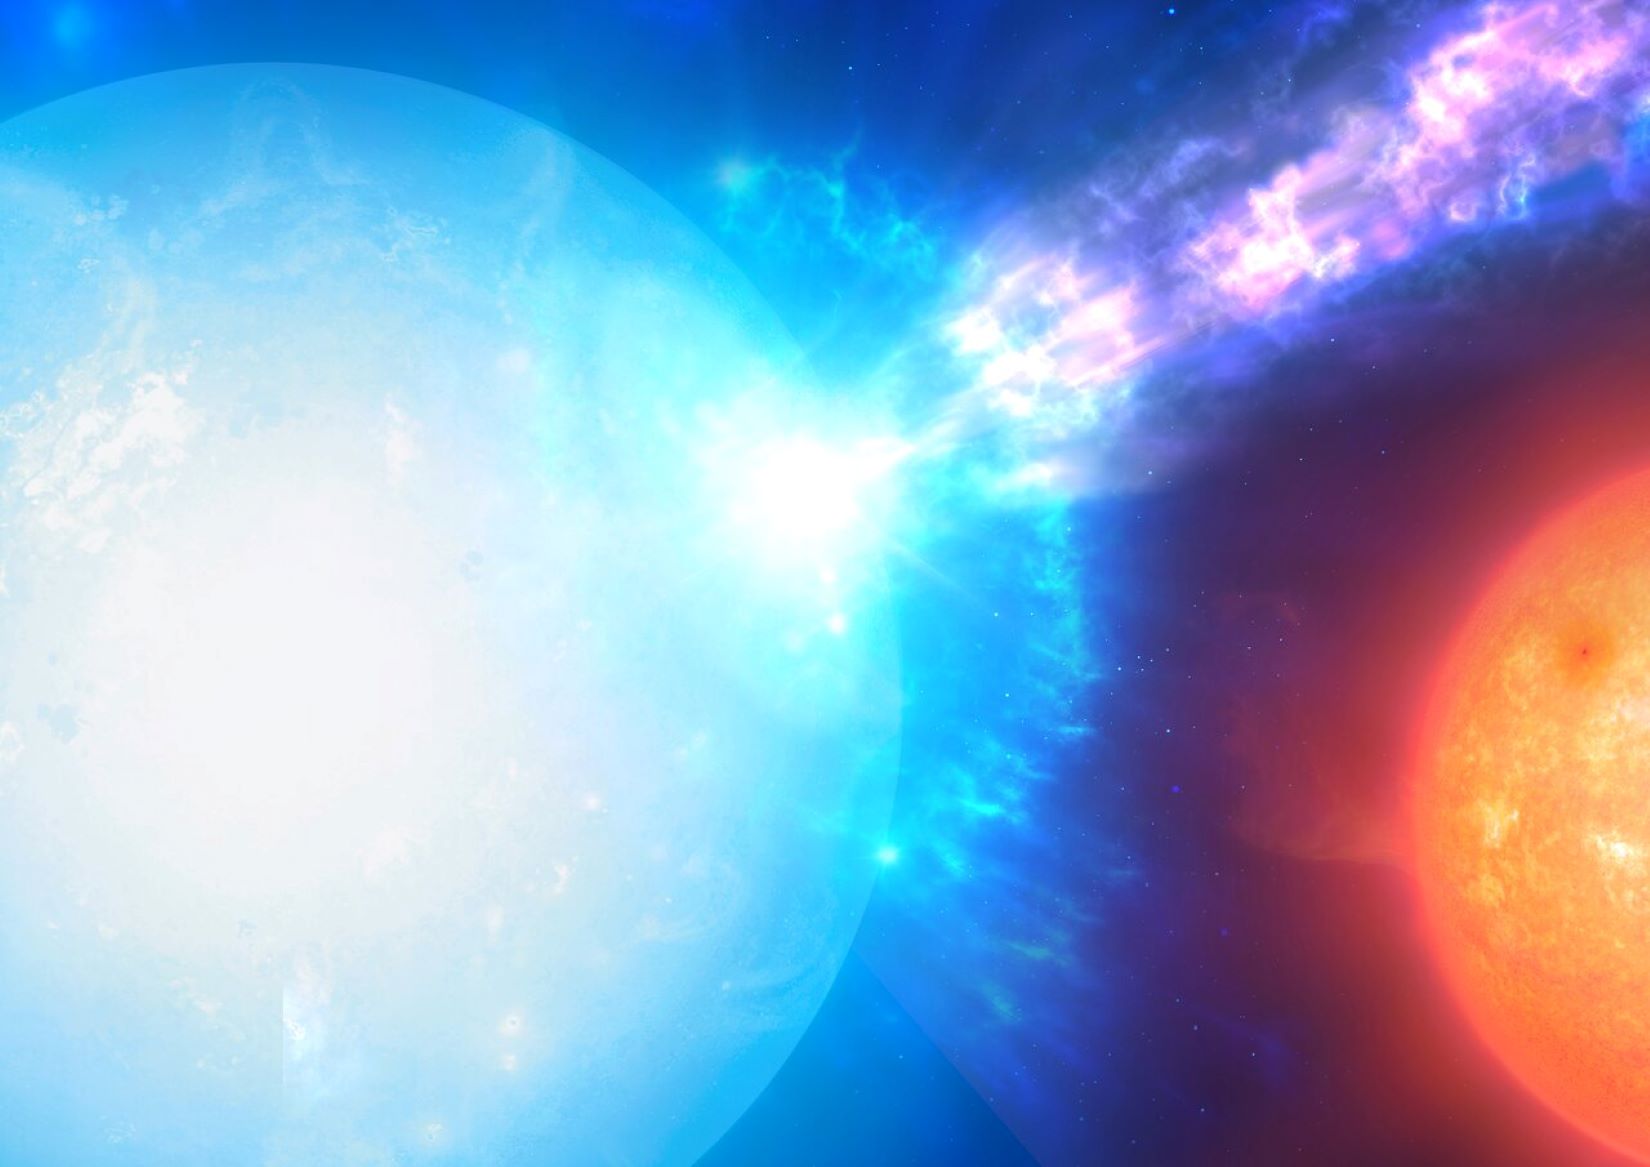 Se ha descubierto un nuevo tipo de explosión estelar: micronovas - El Actual